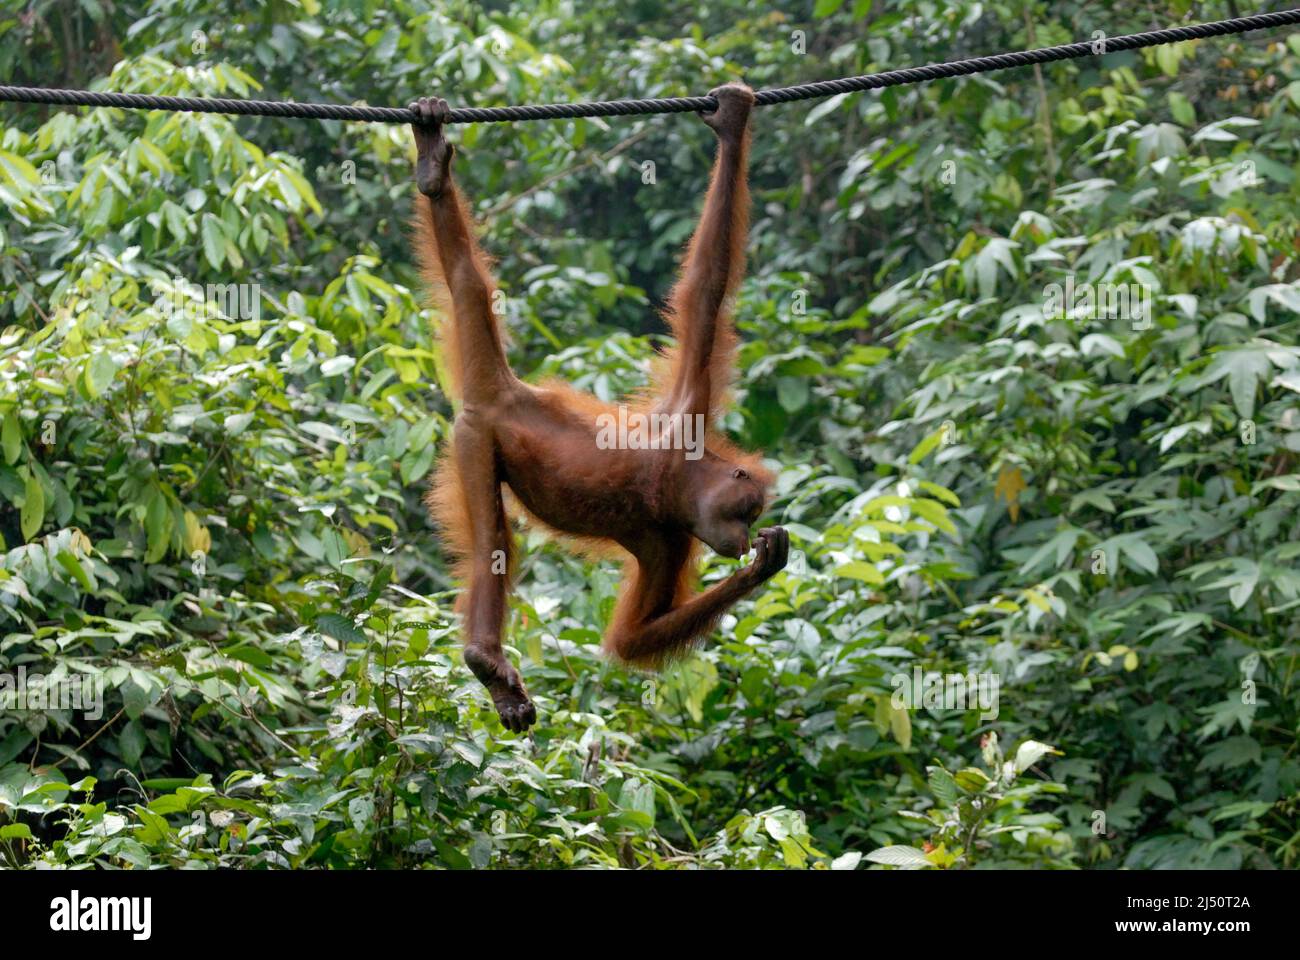 Orangutan playing at the Sepilok Orangutan Rehabilitation Centre. Stock Photo